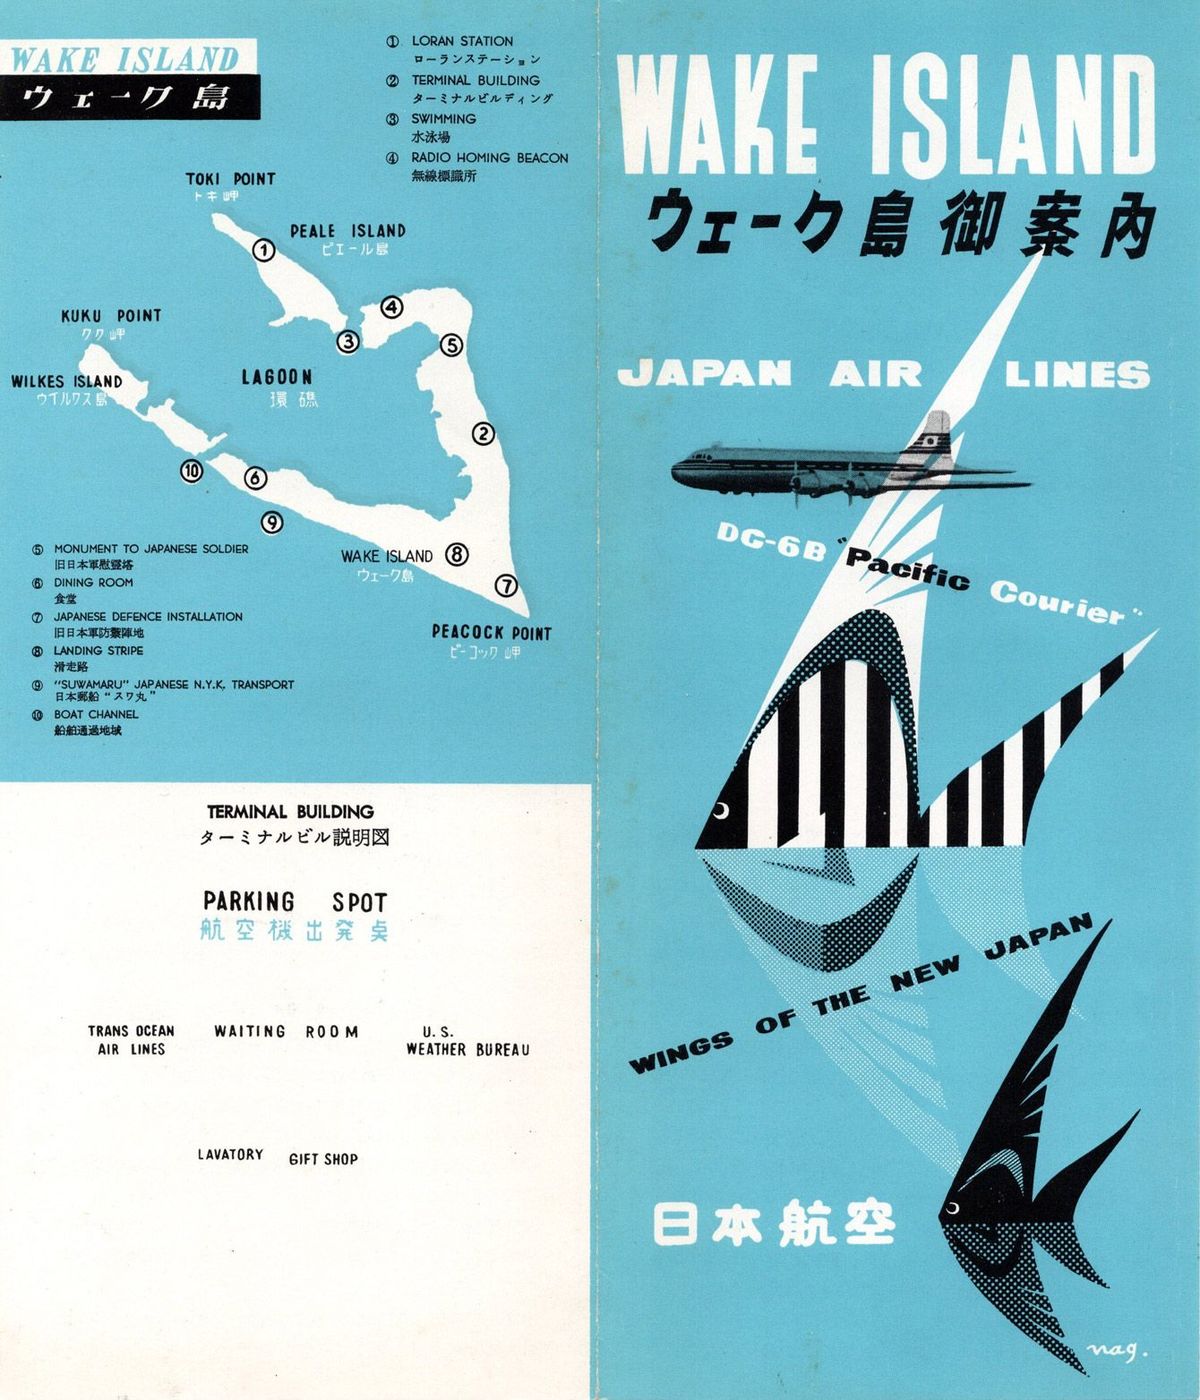 ウェーク島御案内のパンフレット（1955年）。